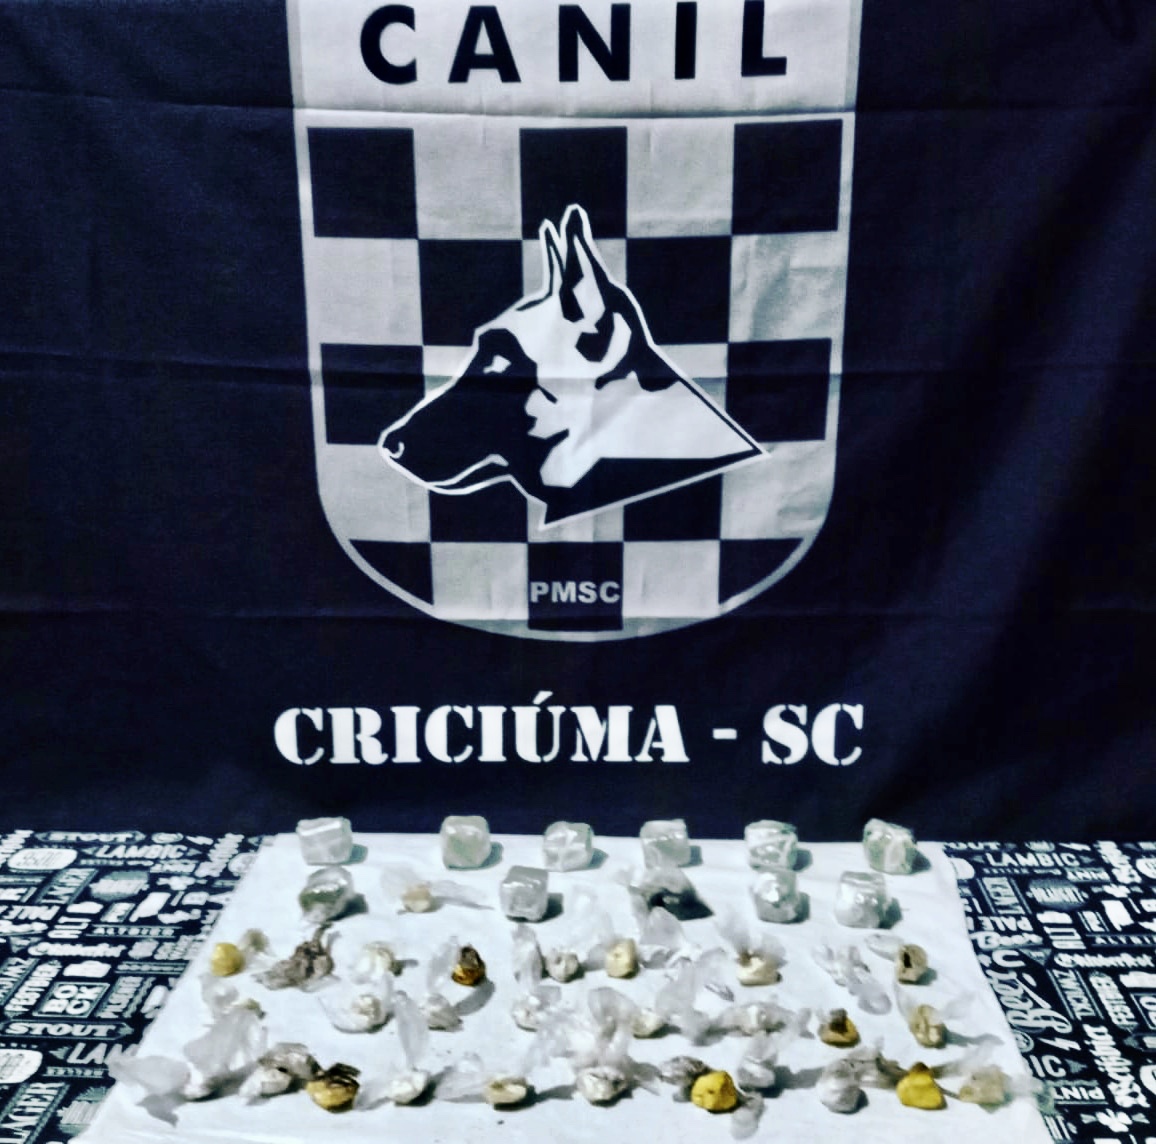 Canil da PM de Criciúma localiza drogas enterradas durante operação